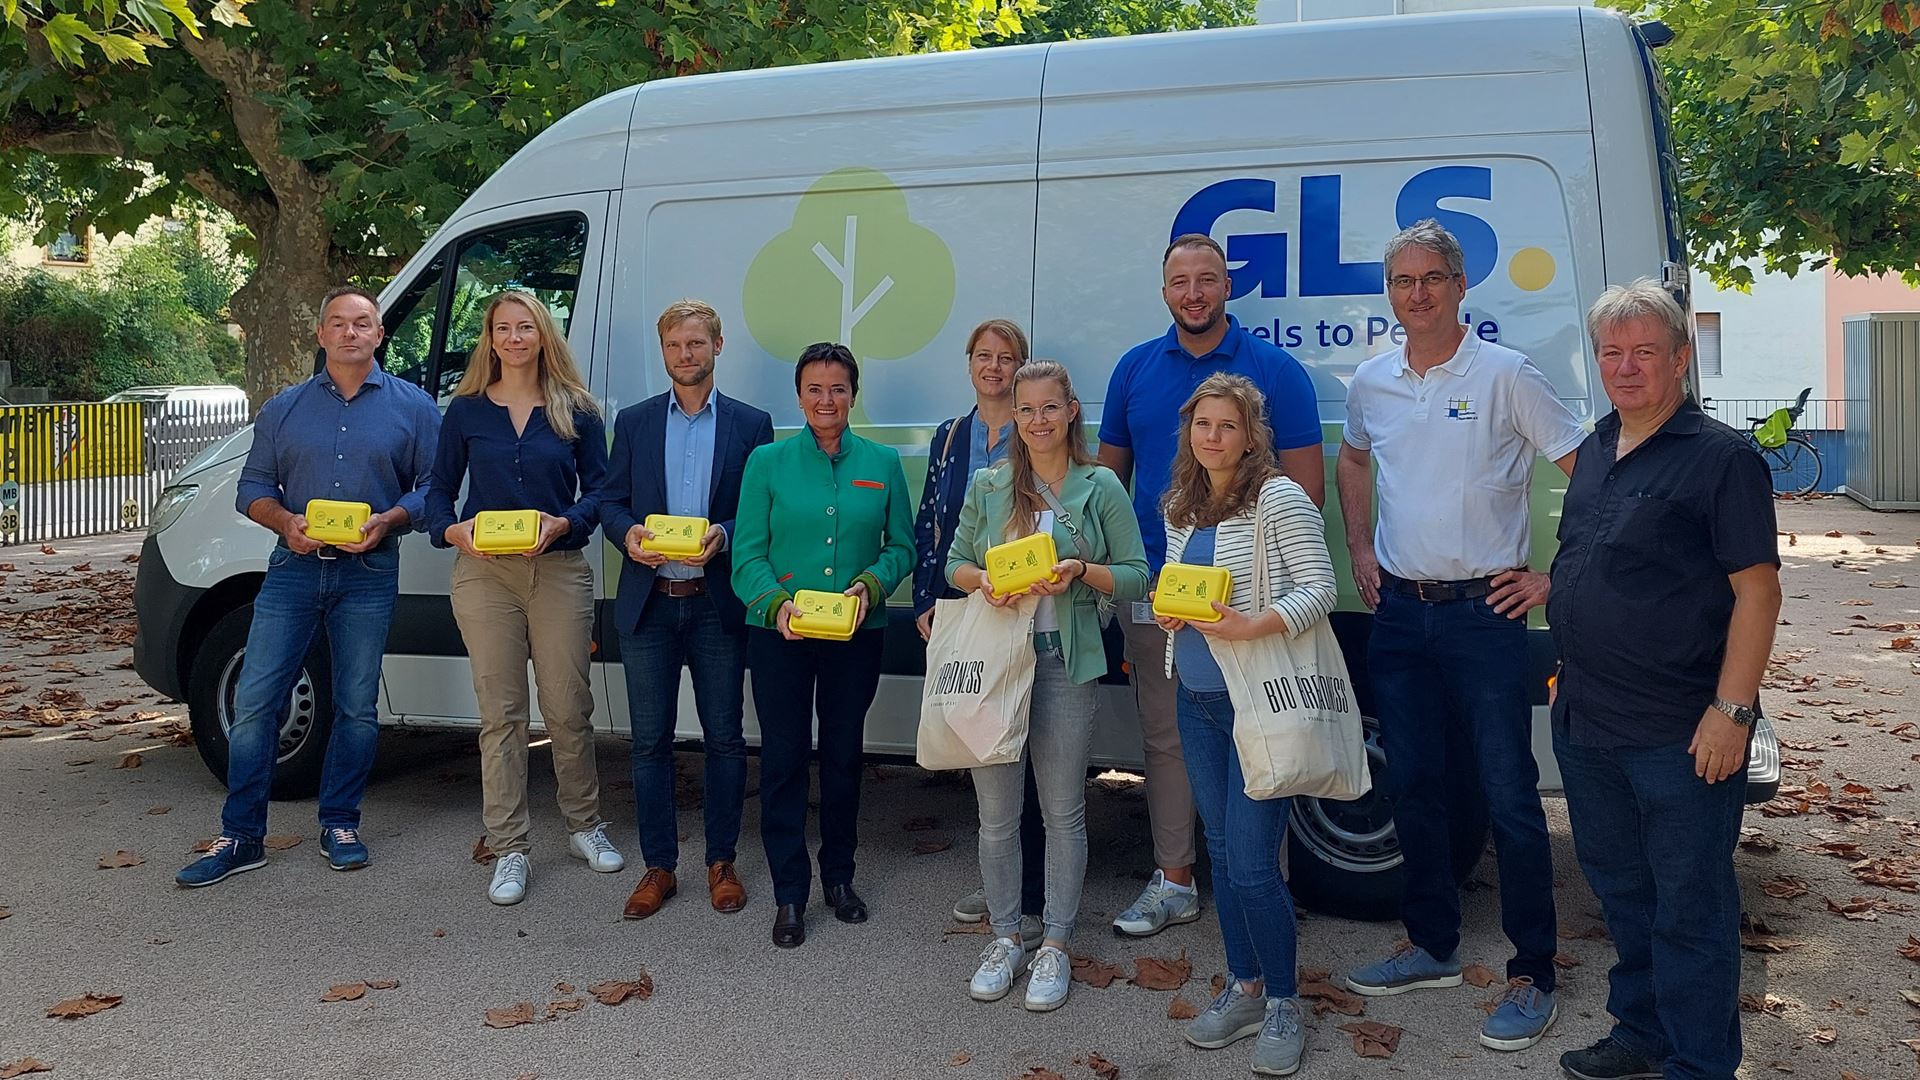 Mit Hilfe von GLS verteilt das Umweltforum Rhein-Main e.V. seine 17. BioBrotbox-Aktion in Frankfurt am Main.